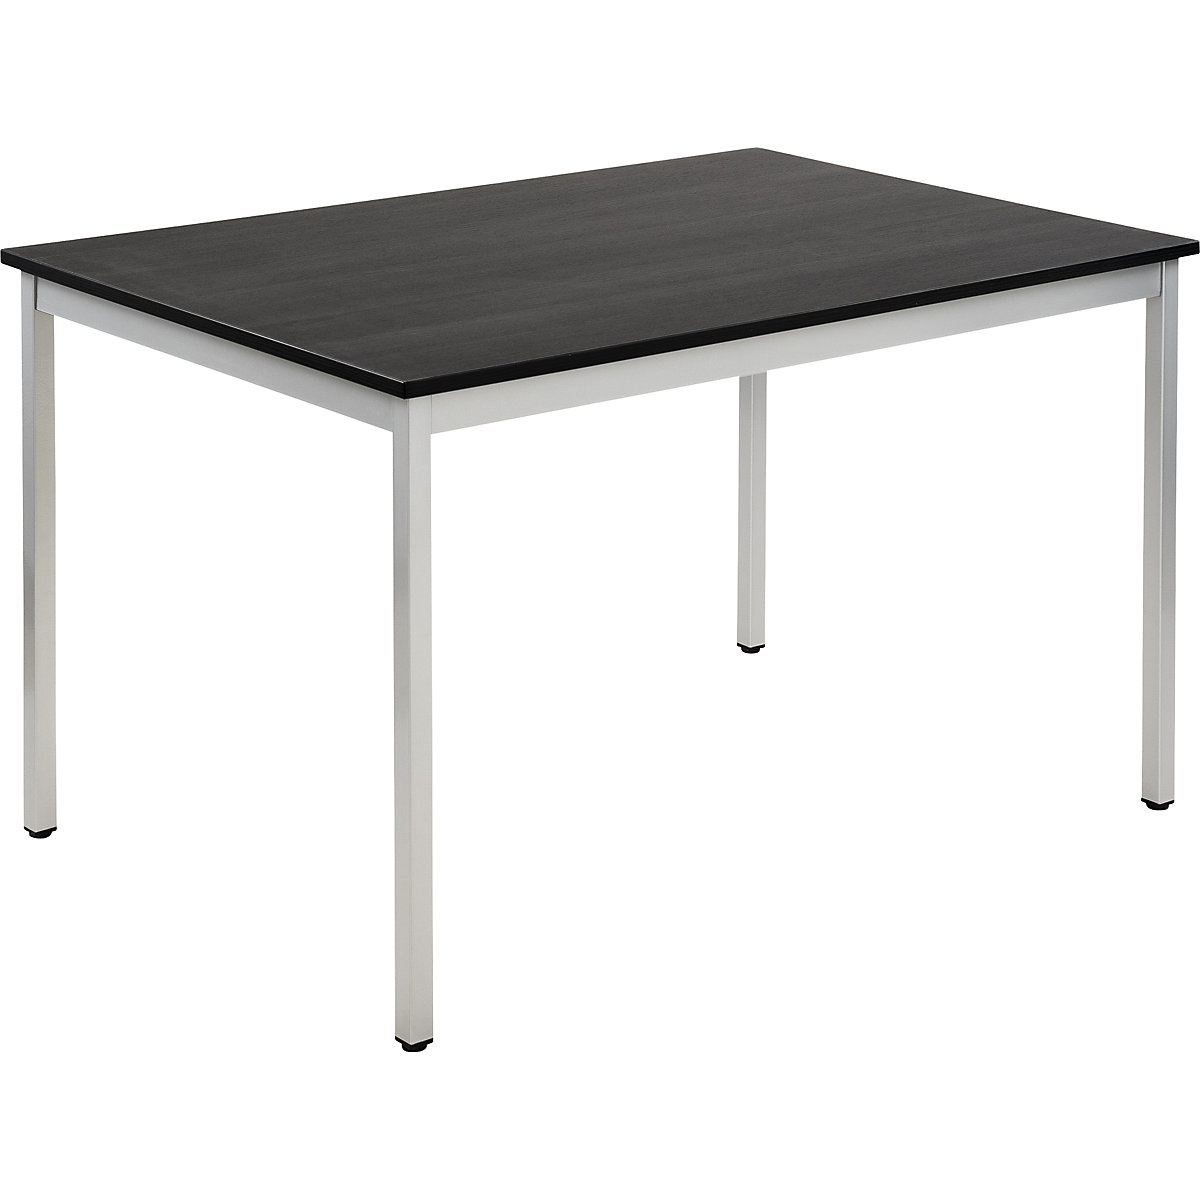 Table polyvalente – eurokraft basic, rectangulaire, l x h 1200 x 740 mm, profondeur 800 mm, plateau façon frêne gris foncé, piétement aluminium-19